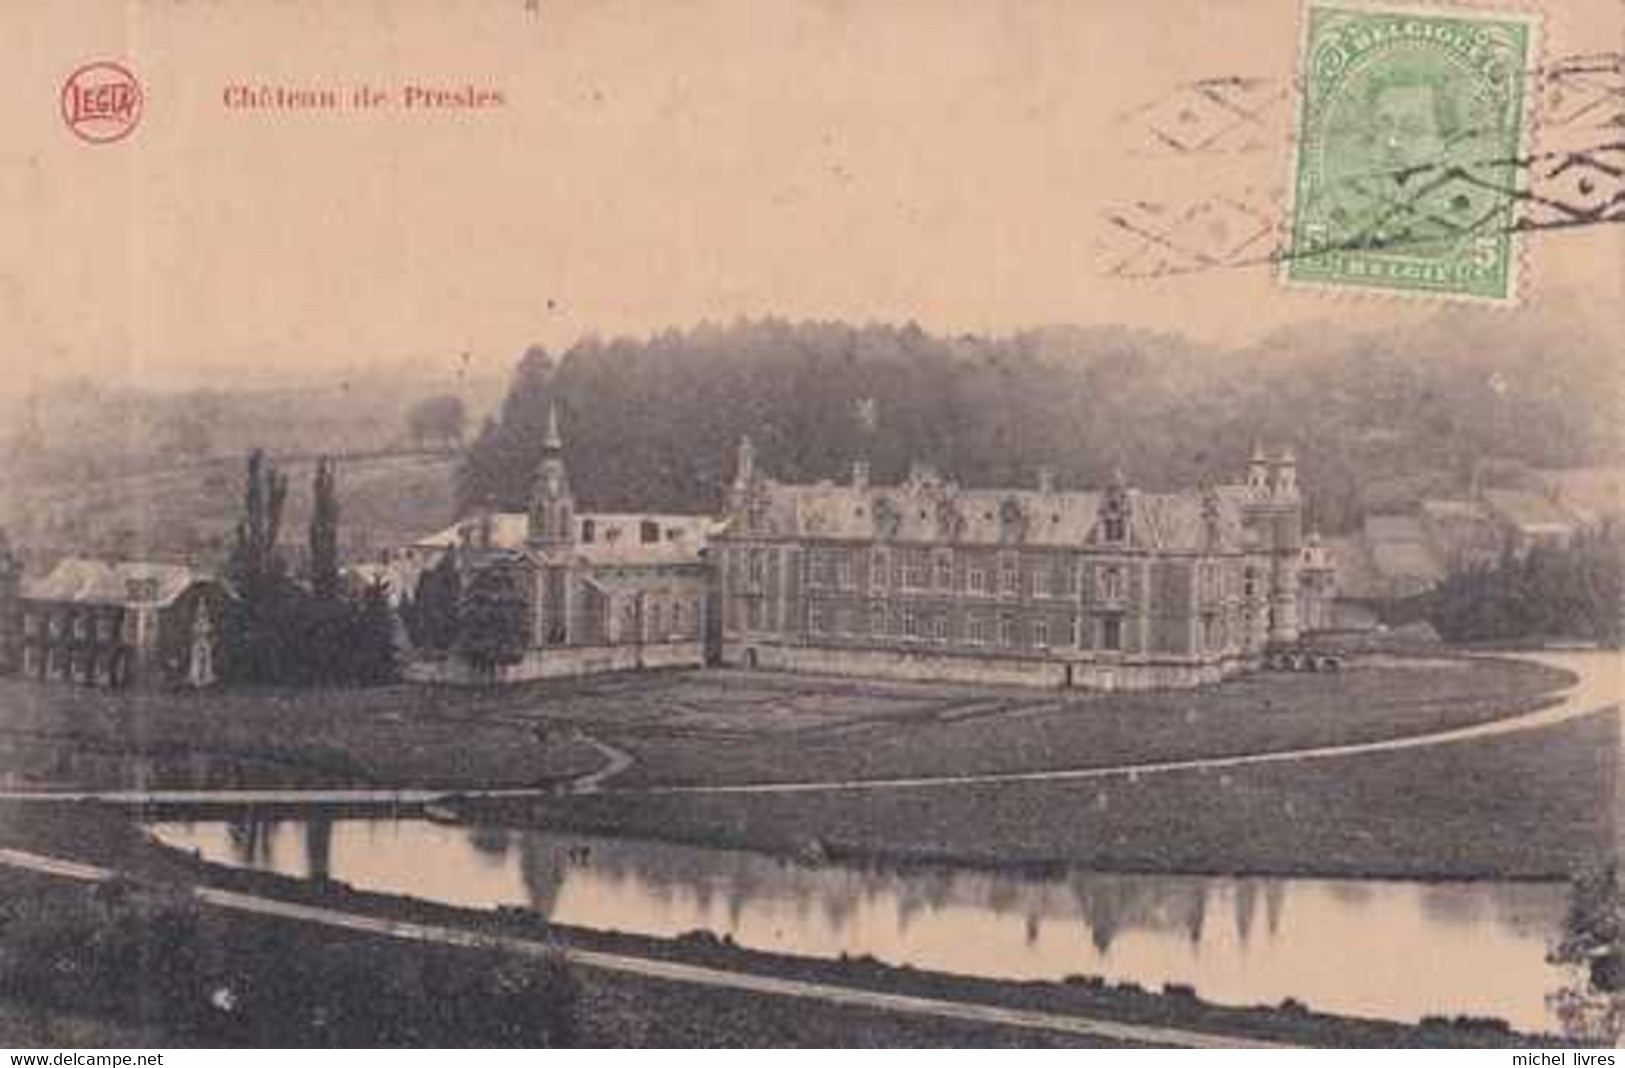 Aiseau-Presles - Château De Presles - Circulé En 1922 - Surtaxe - TBE - Aiseau-Presles